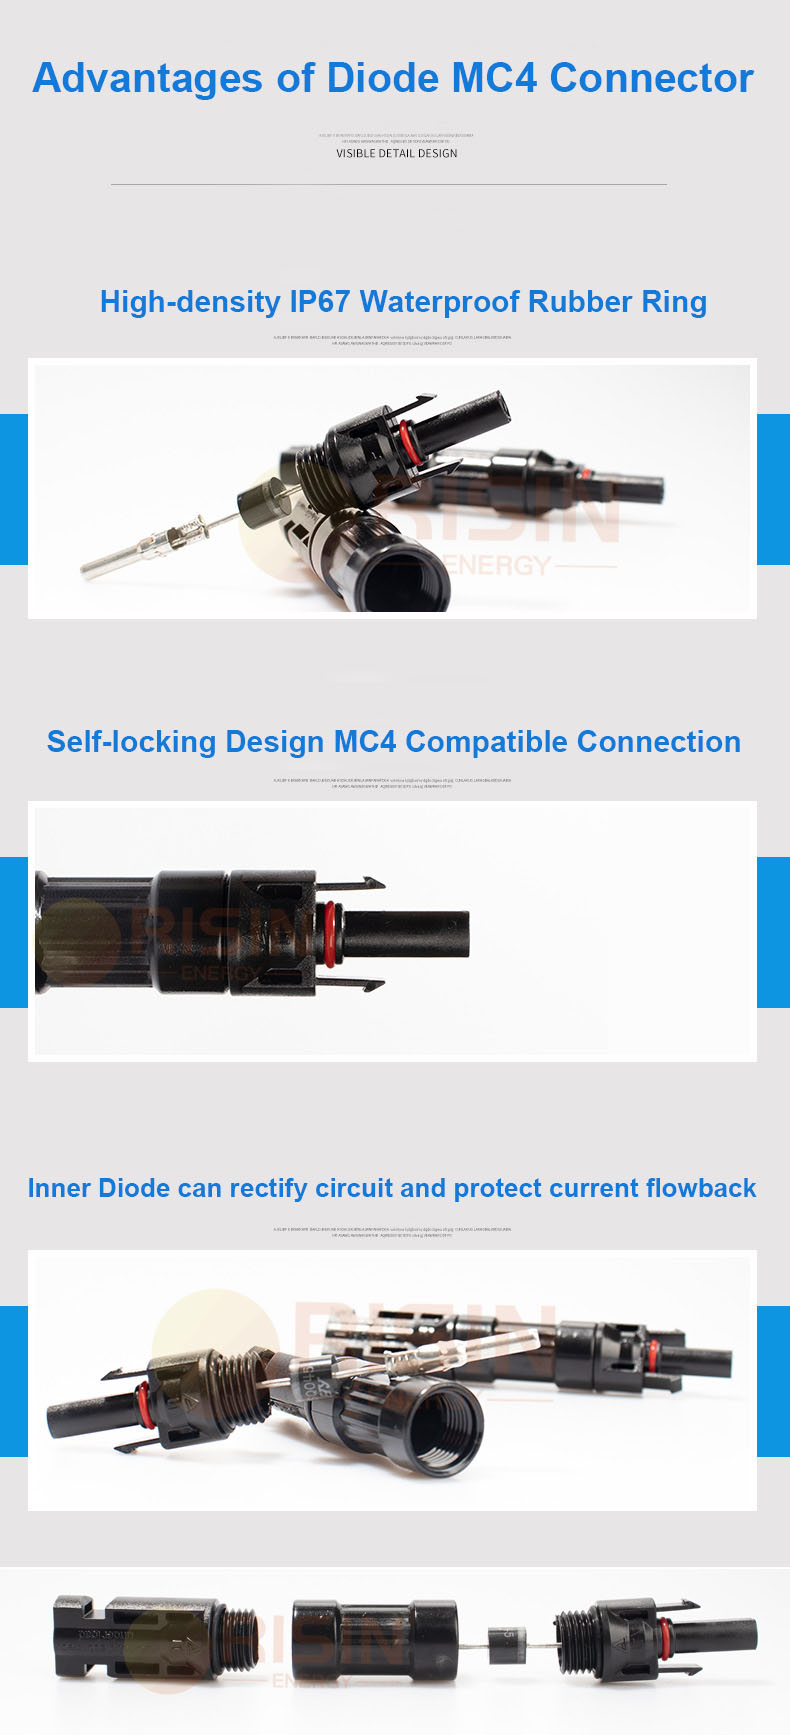 Diode MC4 advantages